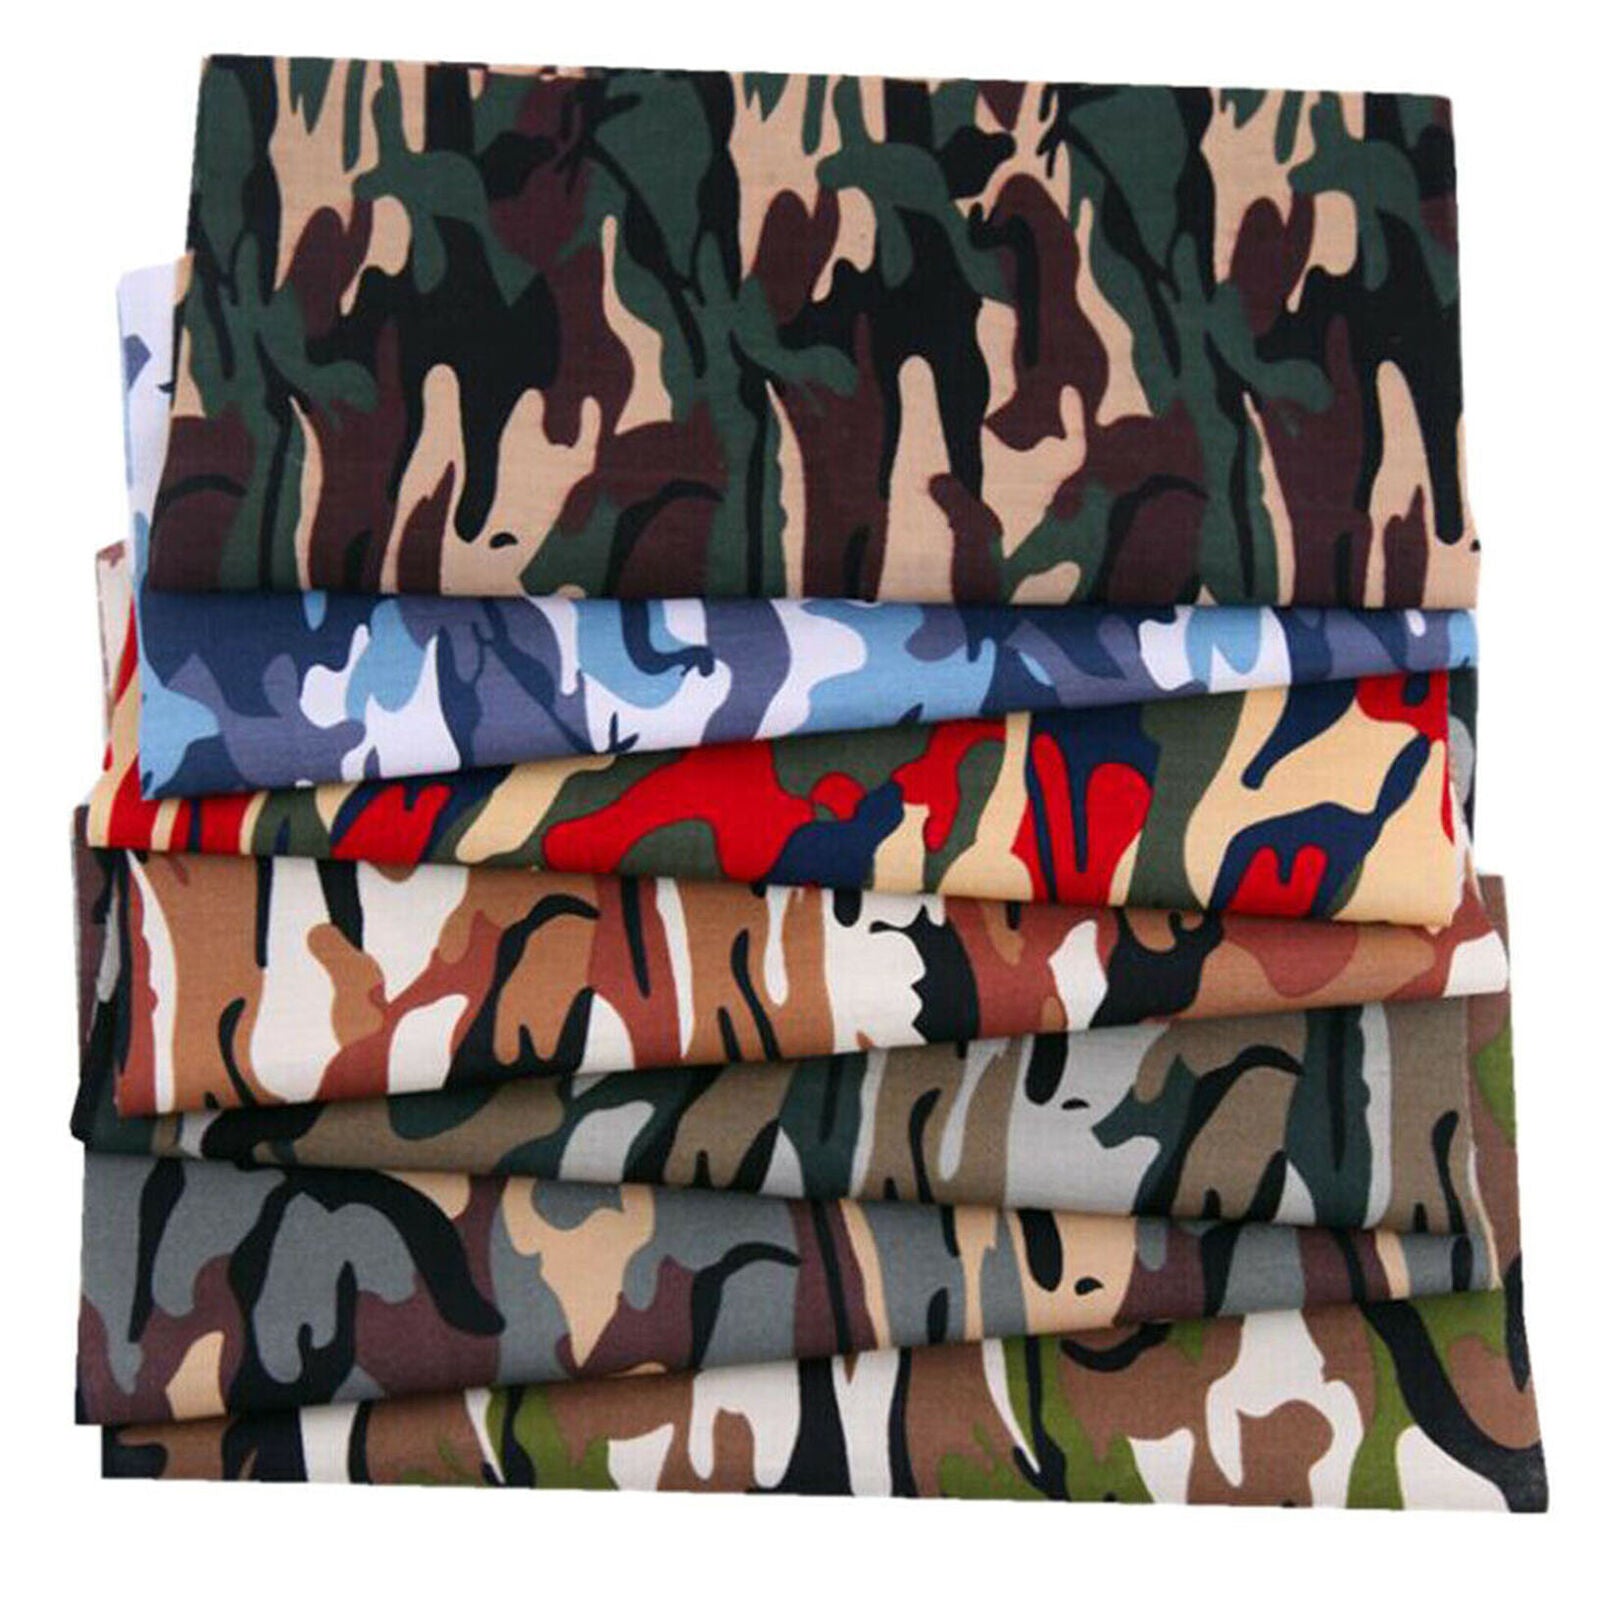 7Pcs 25x20cm Squares Camouflage Cotton Fabric Material Value Bundle Scraps